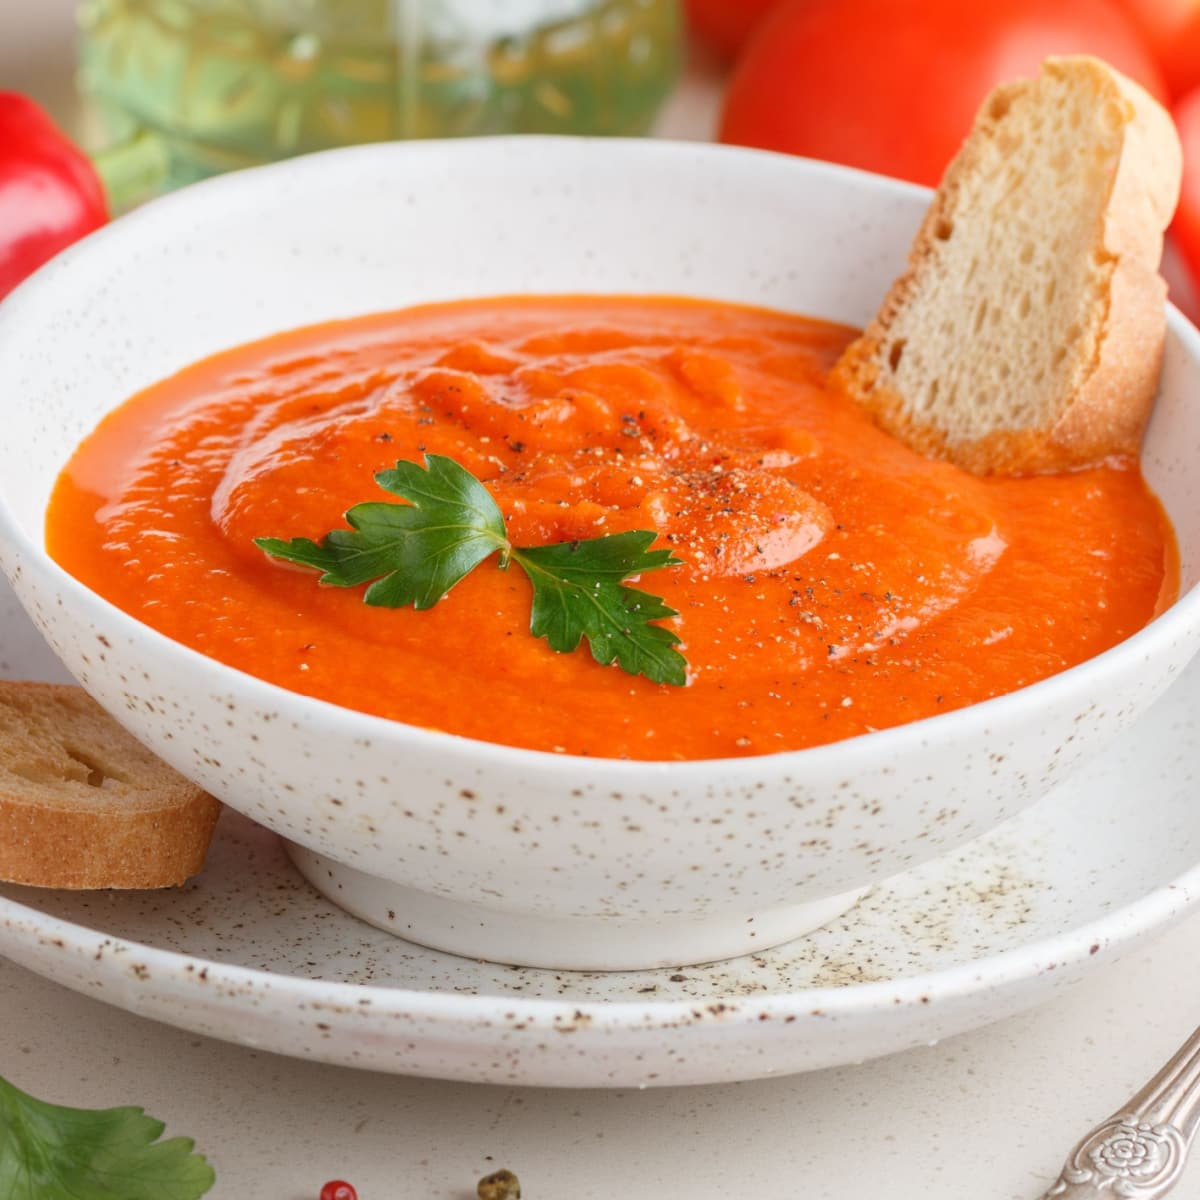 7 Best Tomato Passata Substitutes - Insanely Good